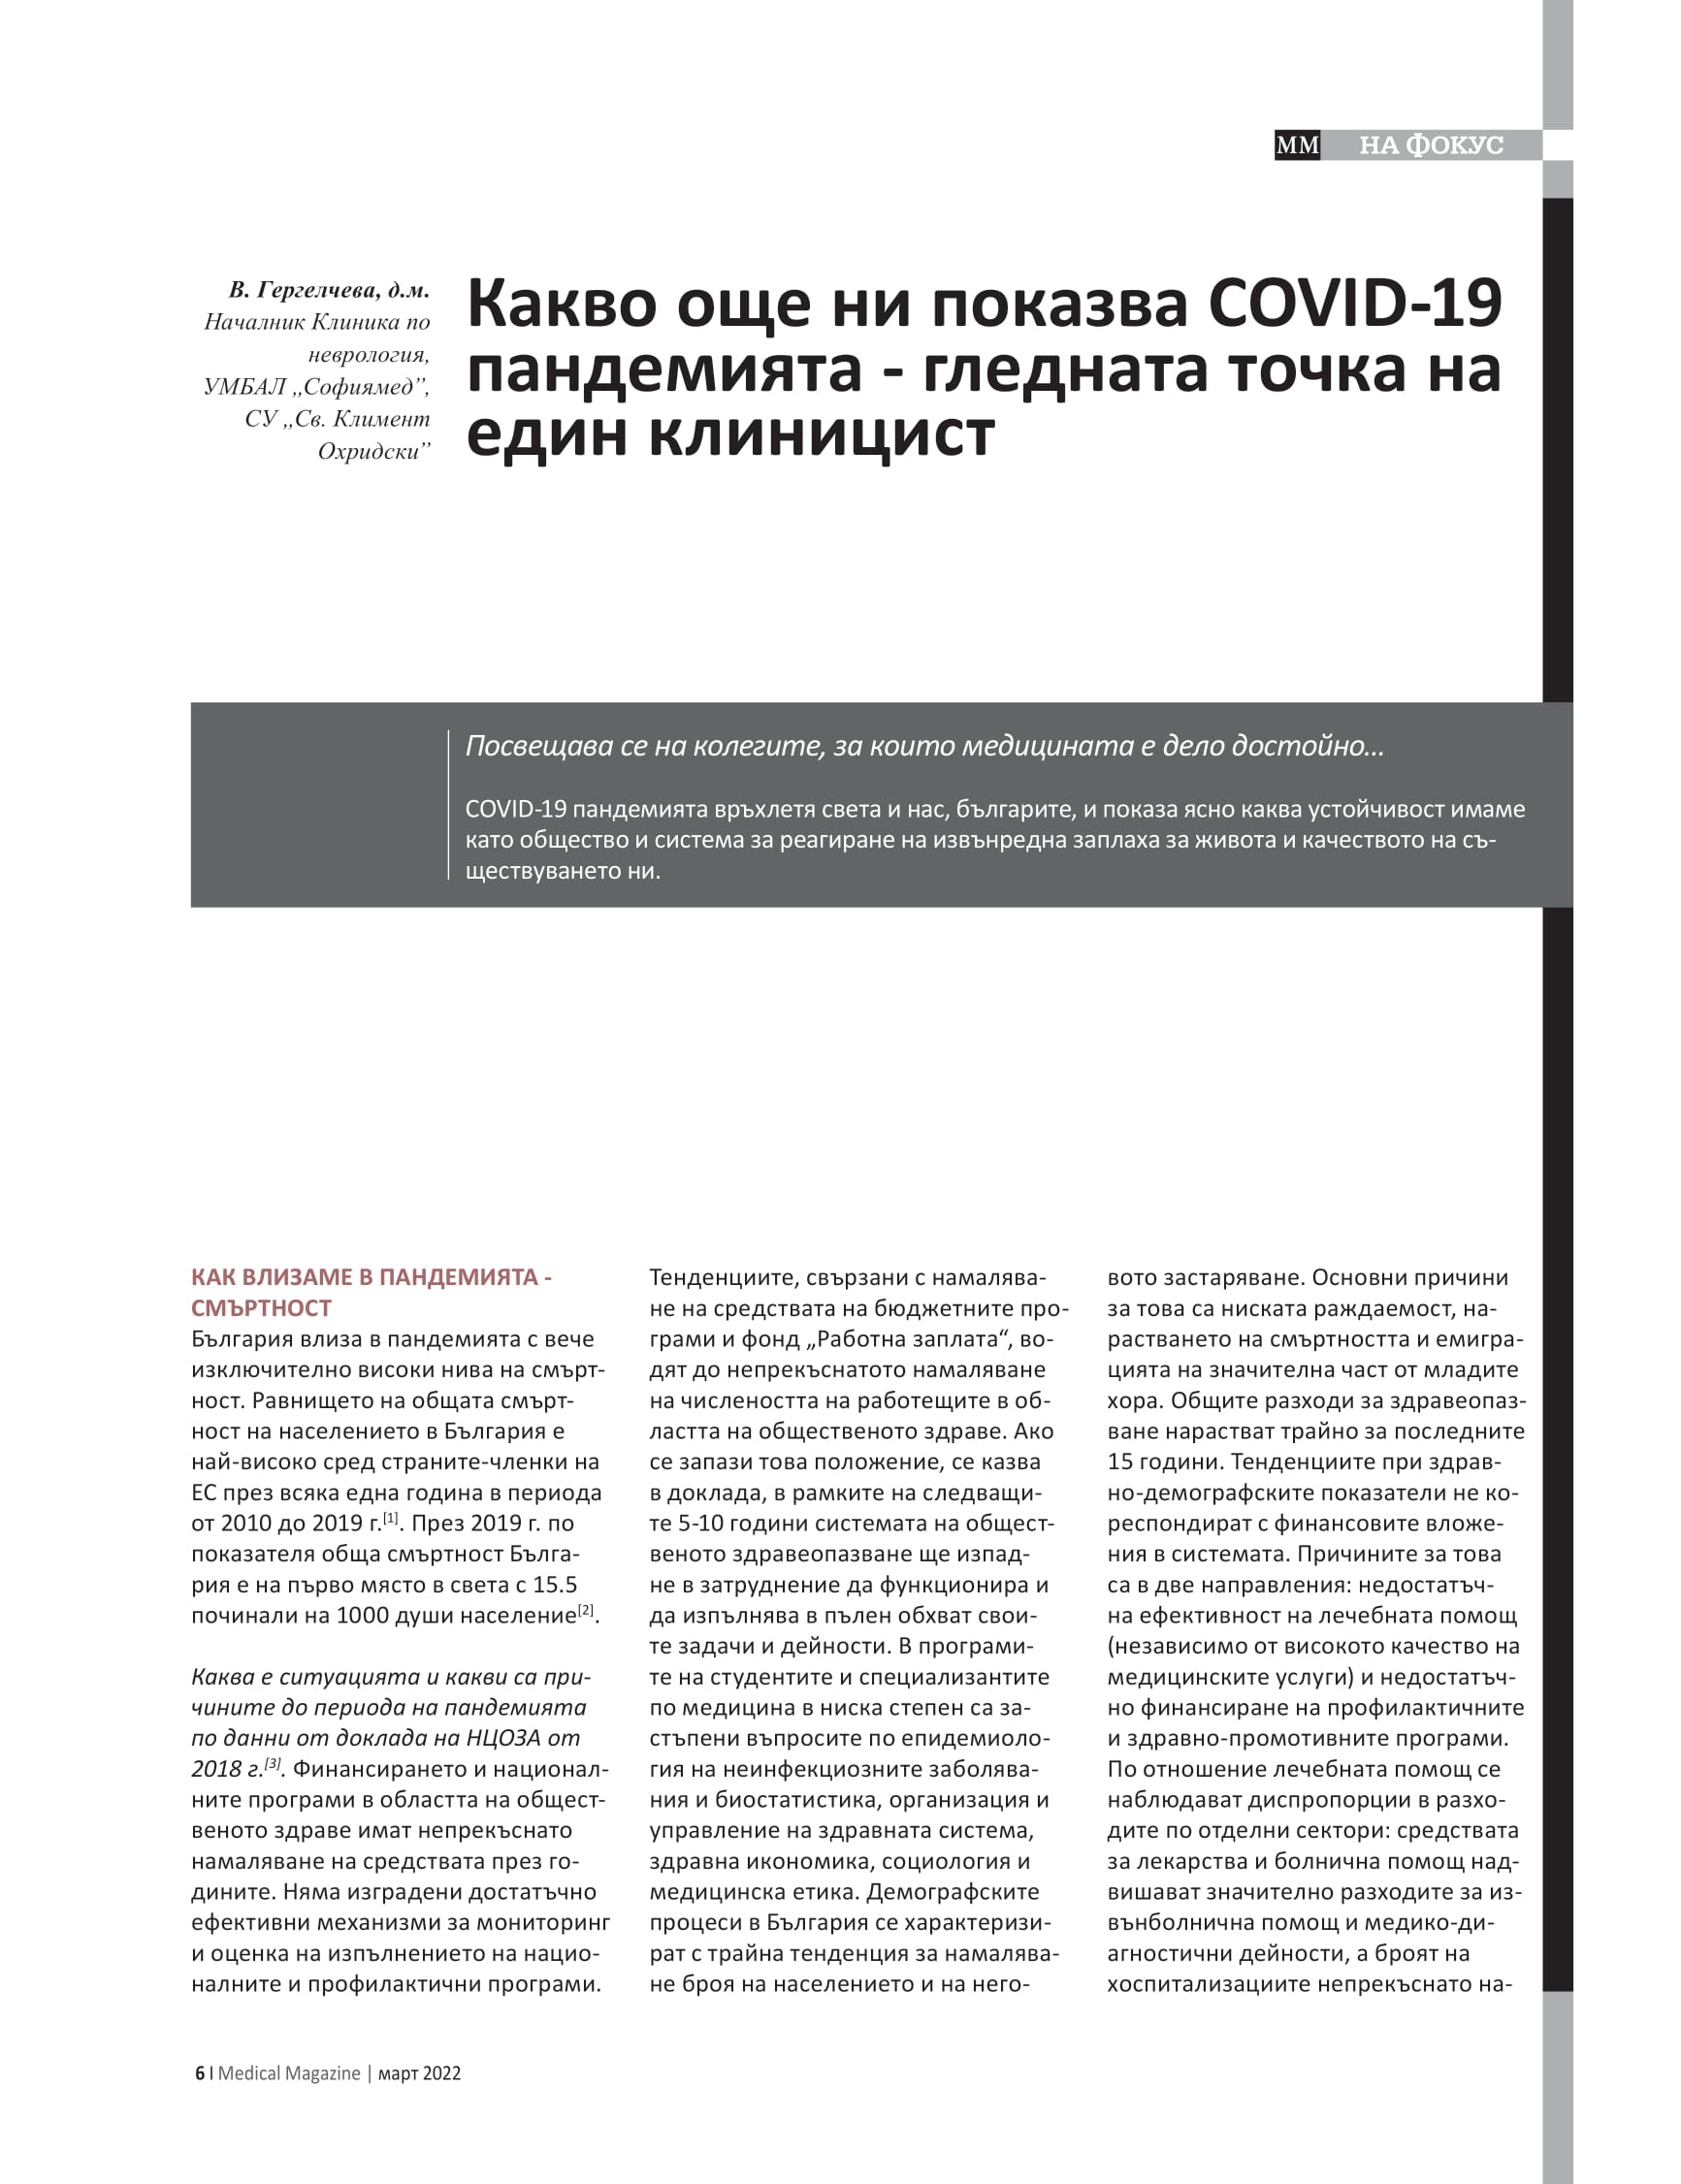 Доц. д-р Велина Гергелчева: Какво още ни показва COVID-19 пандемията - гледната точка на един клиницист